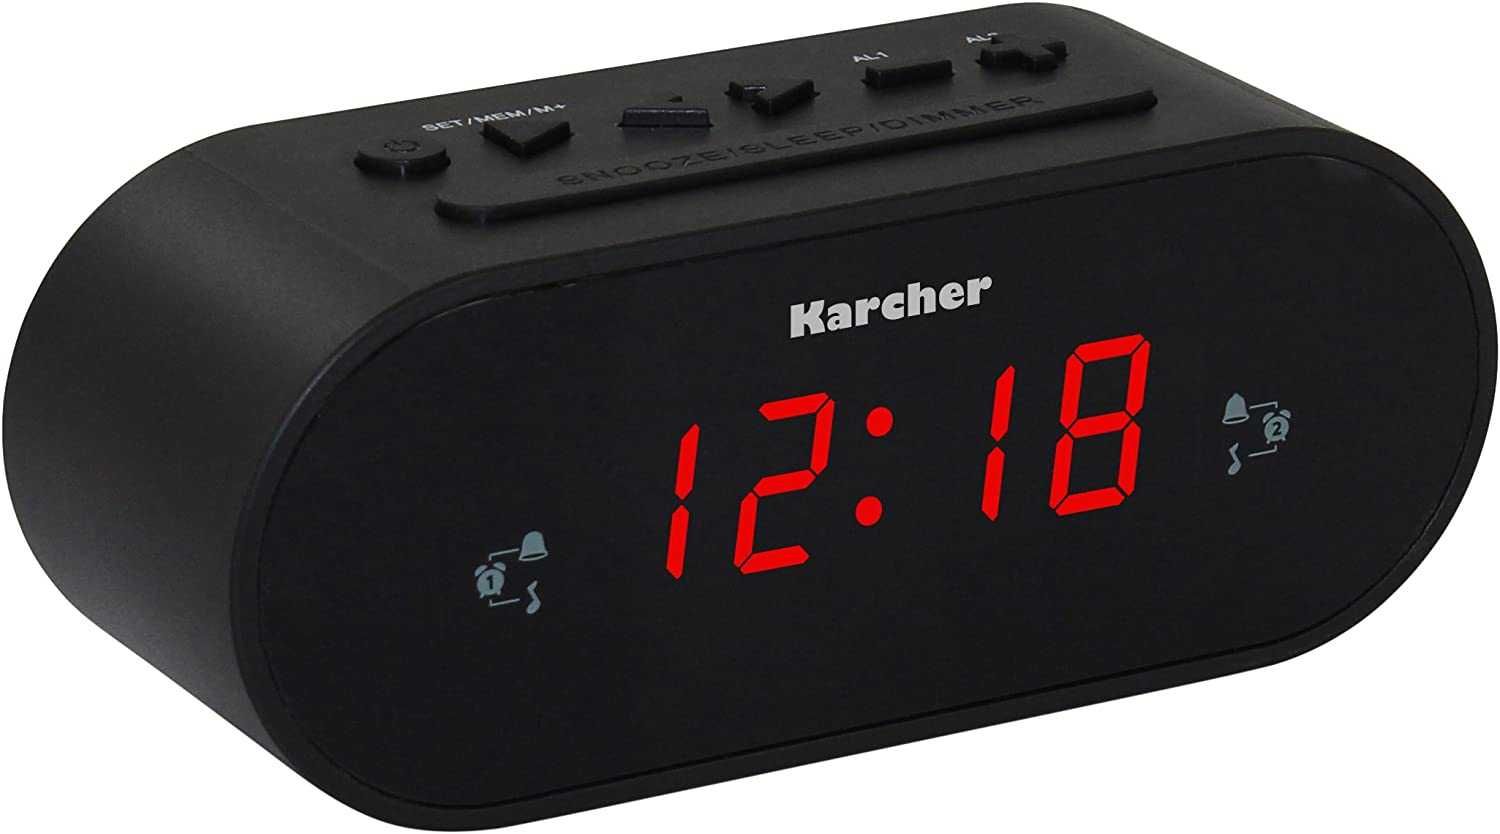 Karcher UR 1030 radiobudzik FM podwójny alarm LCD ściemniacz drzemka